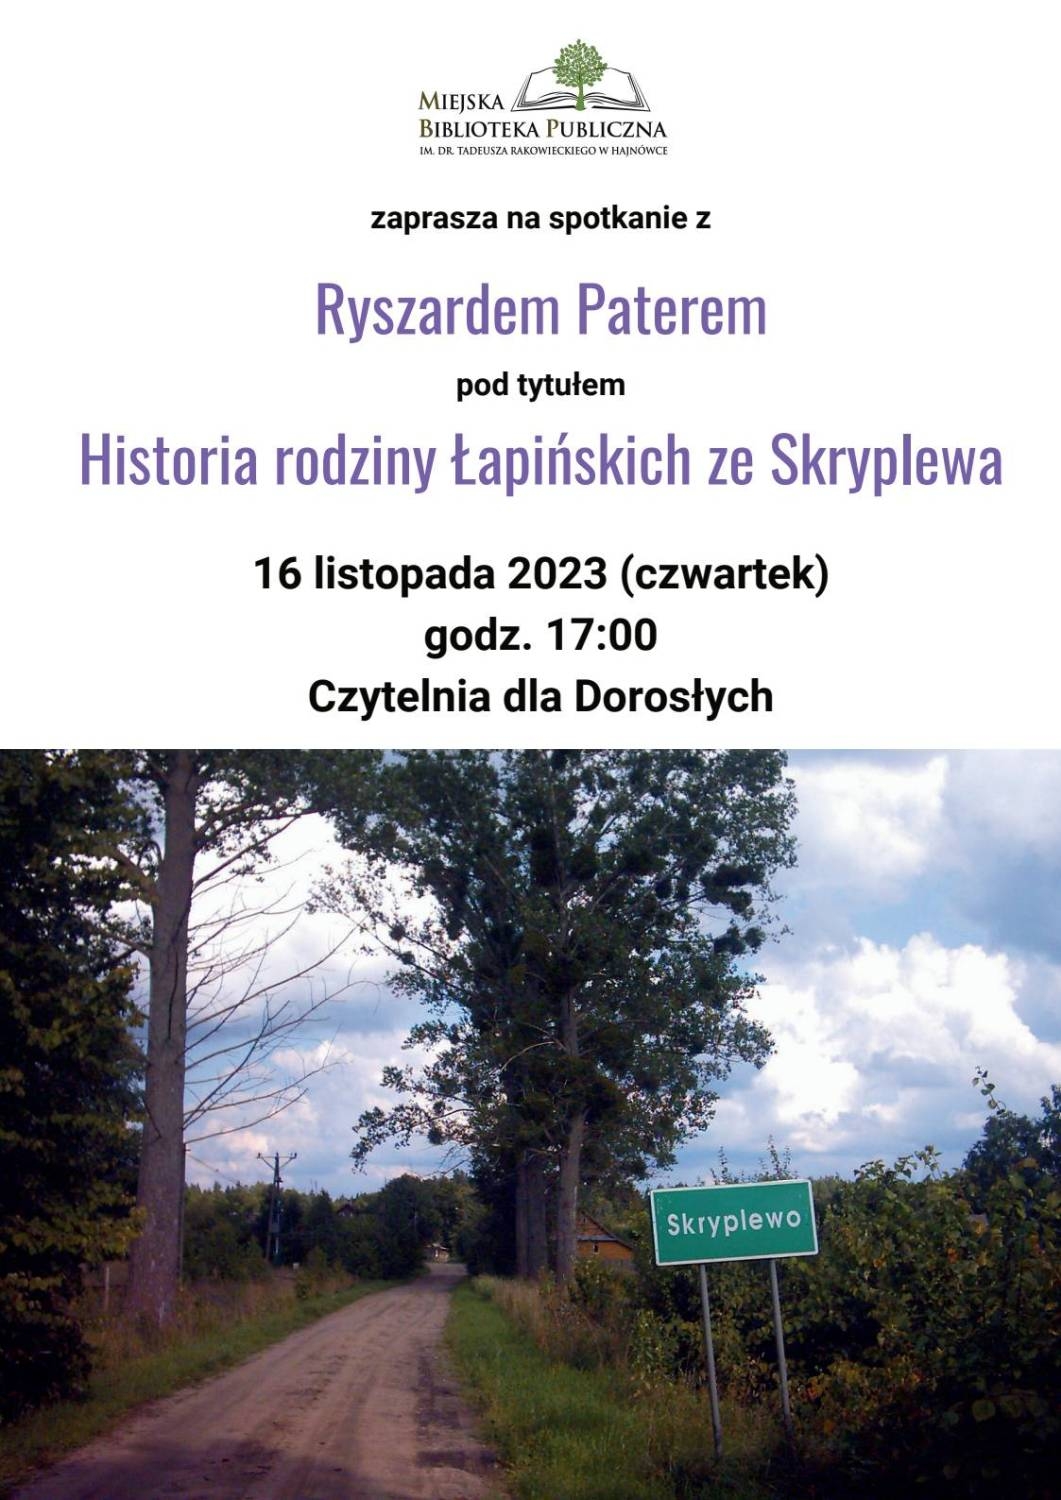 zdjecie drogi ze znakiem drogowym z nazwą Skryplewo, logo organizatora oraz informacje o wydarzeniu